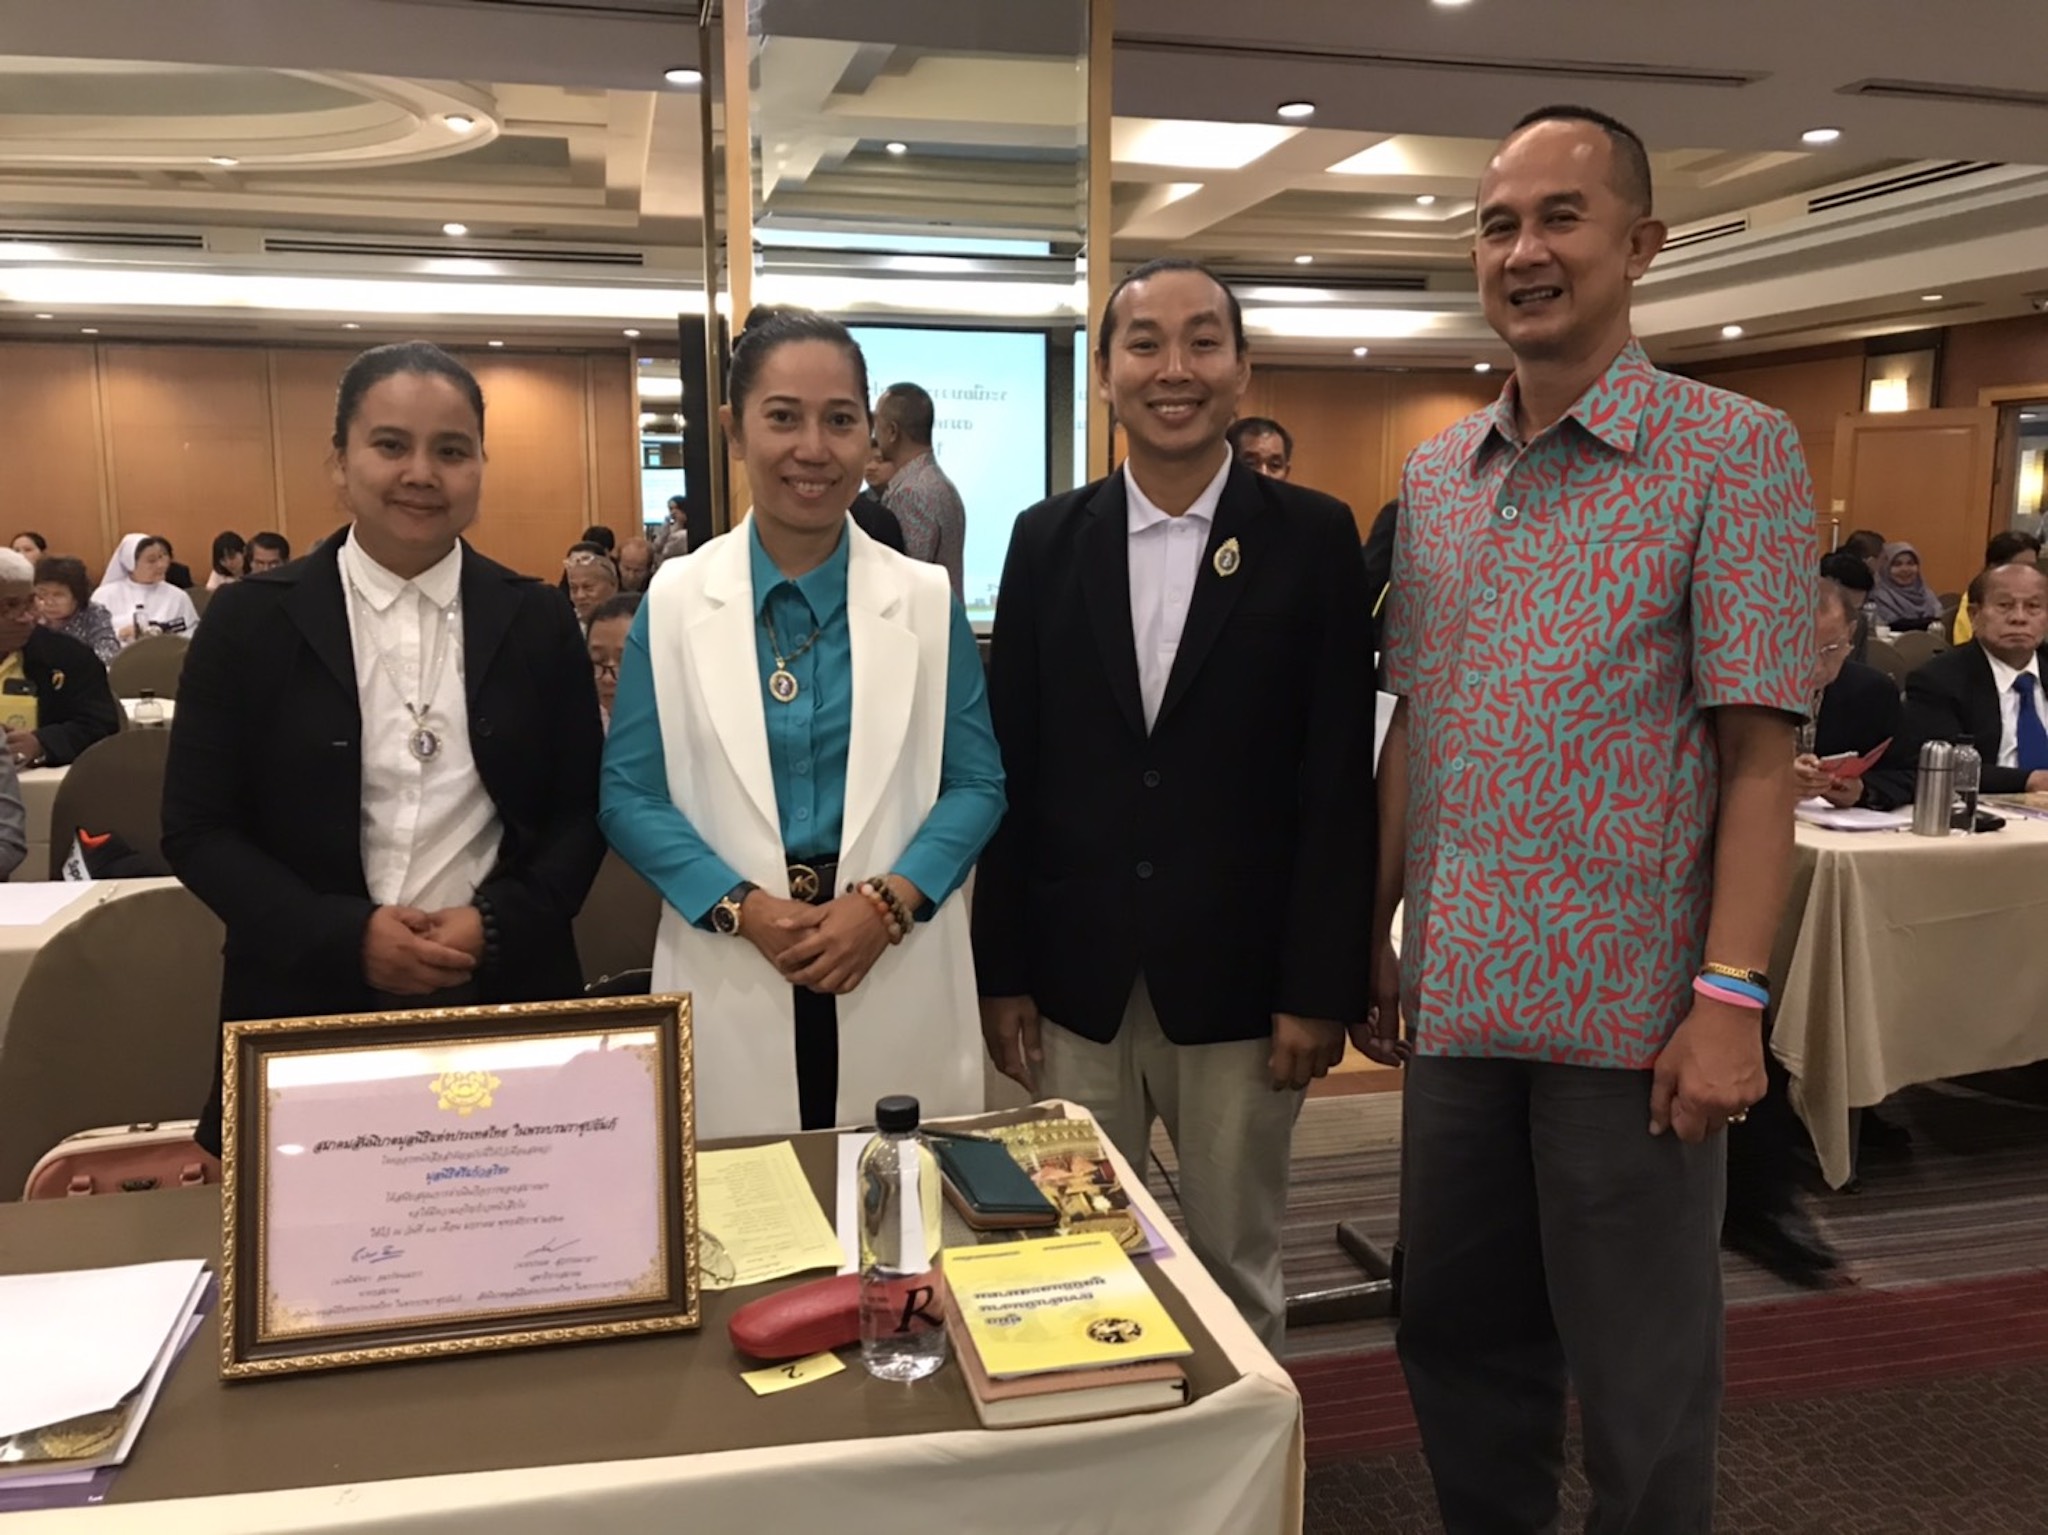 กิจกรรมการประชุมใหญ่สามัญประจำปีสมาคมสันนิบาตมูลนิธิสมาคมแห่งประเทศไทย วันที่ 18  มกราคม  2563 ณ โรงแรมรอยัลริเวอร์ เขตบางพลัด กรุงเทพฯ